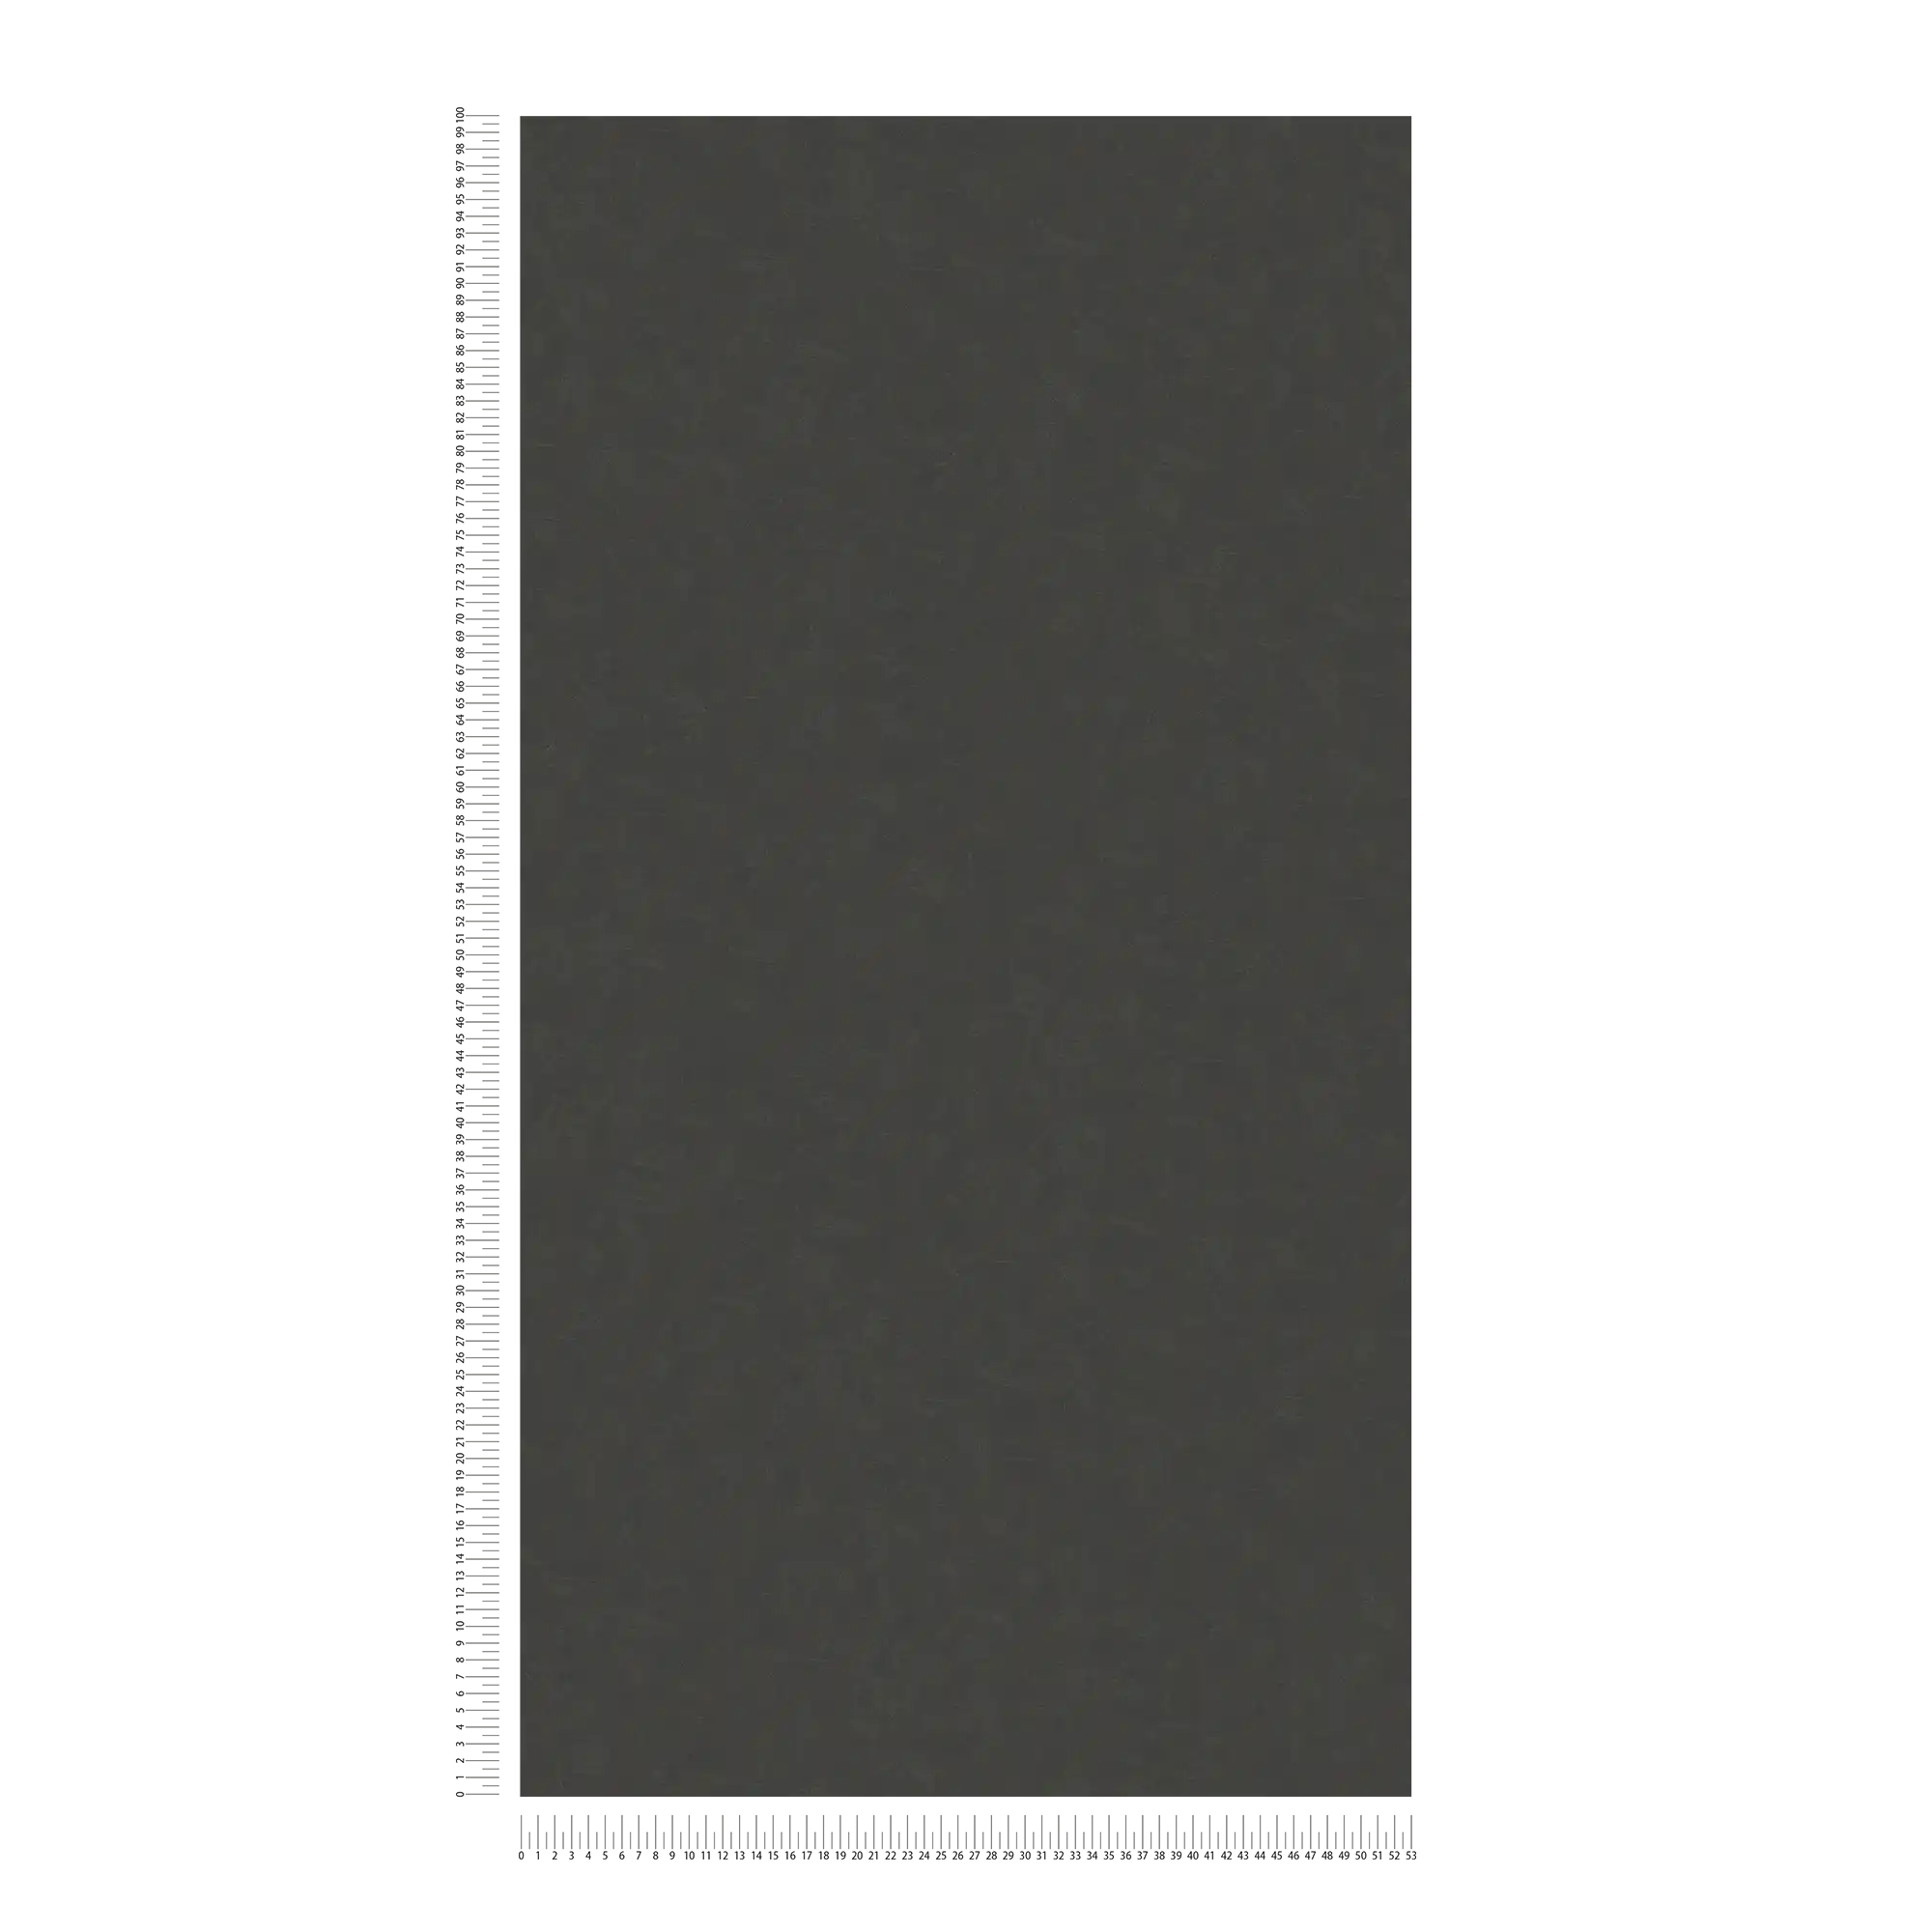             Papel pintado no tejido de llana de yeso - negro, antracita
        